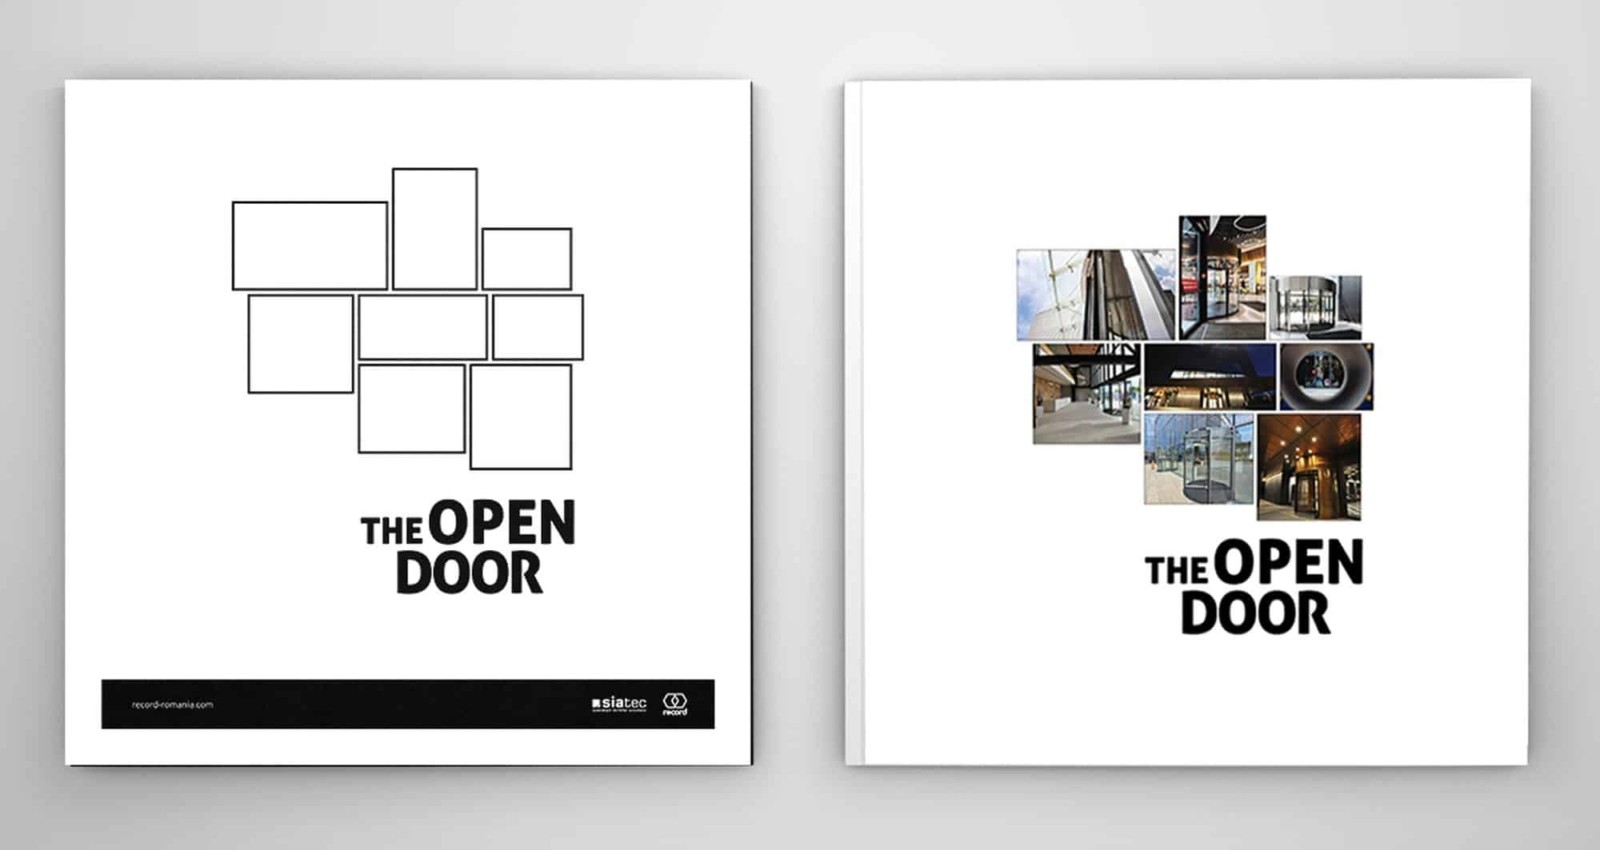 Evenimentul The Open Door Cartea Record Eveniment de arhitectura book design design de carte 2